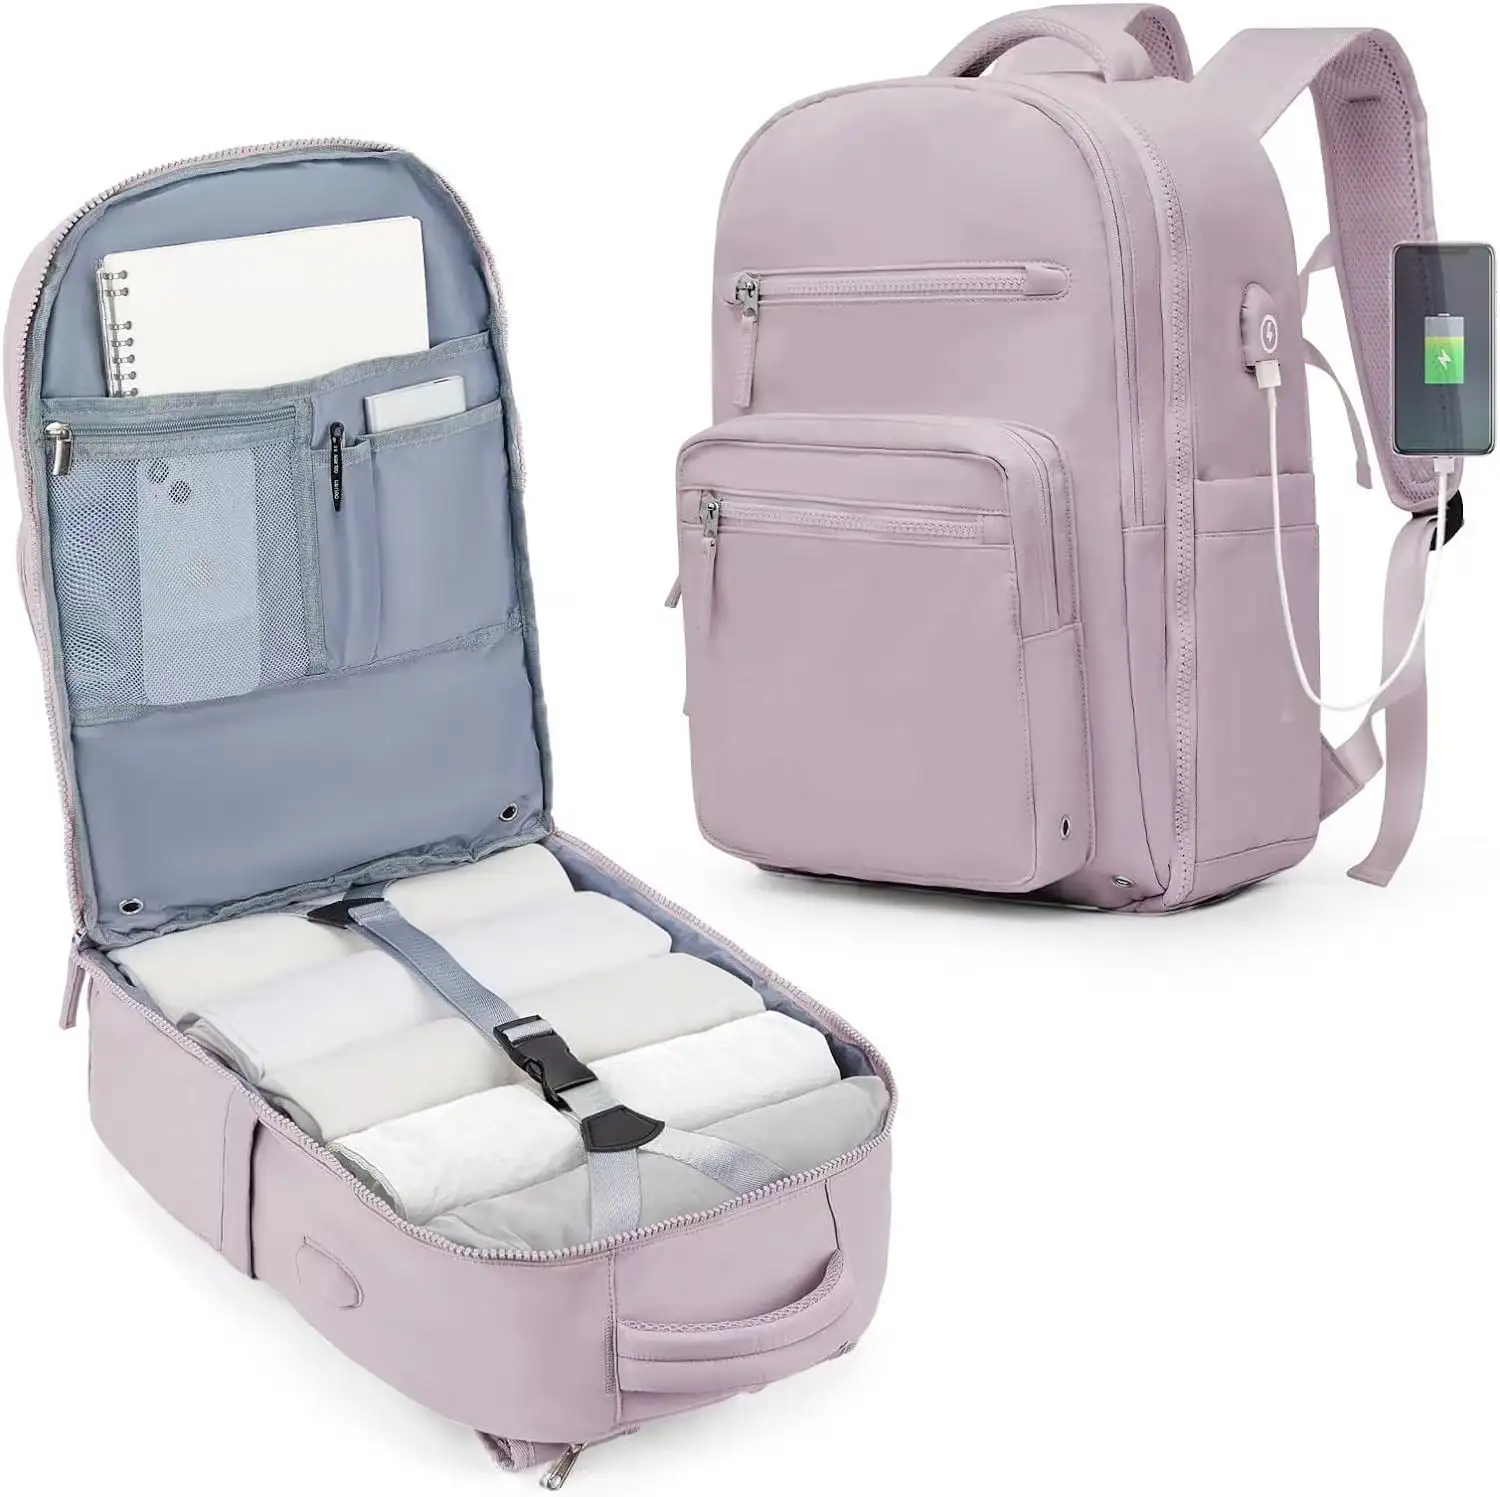 حقيبة ظهر تكتيكية مضادة للماء من Yuhong سعر جيد حقائب للكمبيوتر المحمول مع منفذ شاحن USB حقيبة ظهر مخصصة للمجتمع المدرسي